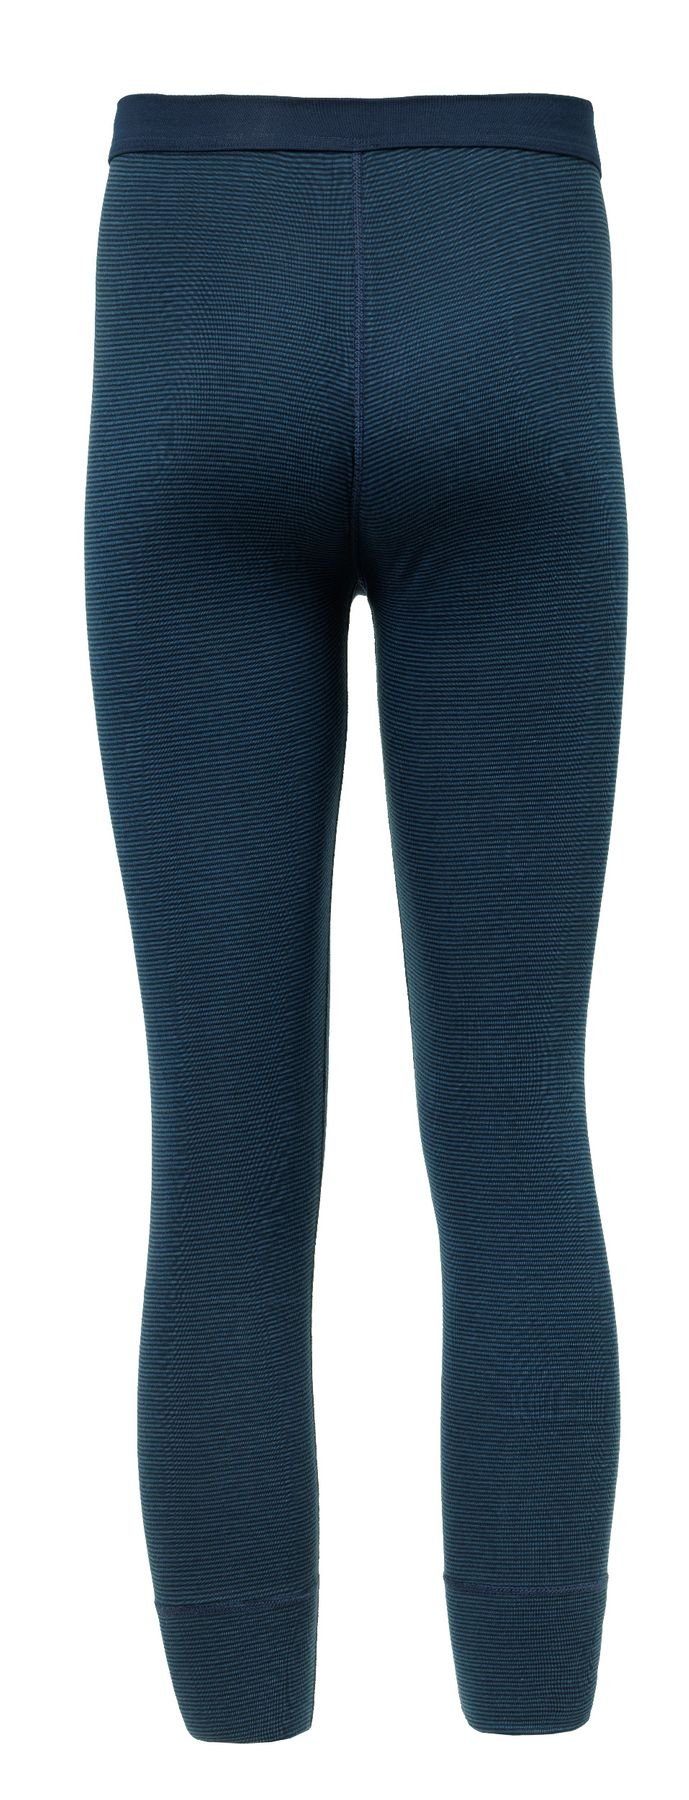 formbeständig, 1919 77219873-navy/jeansblau pflegeleicht, Funktionshose Pack) 2-tlg., HAASIS strapazierfähig Bodywear Optimale Passform, (Packung, 2er